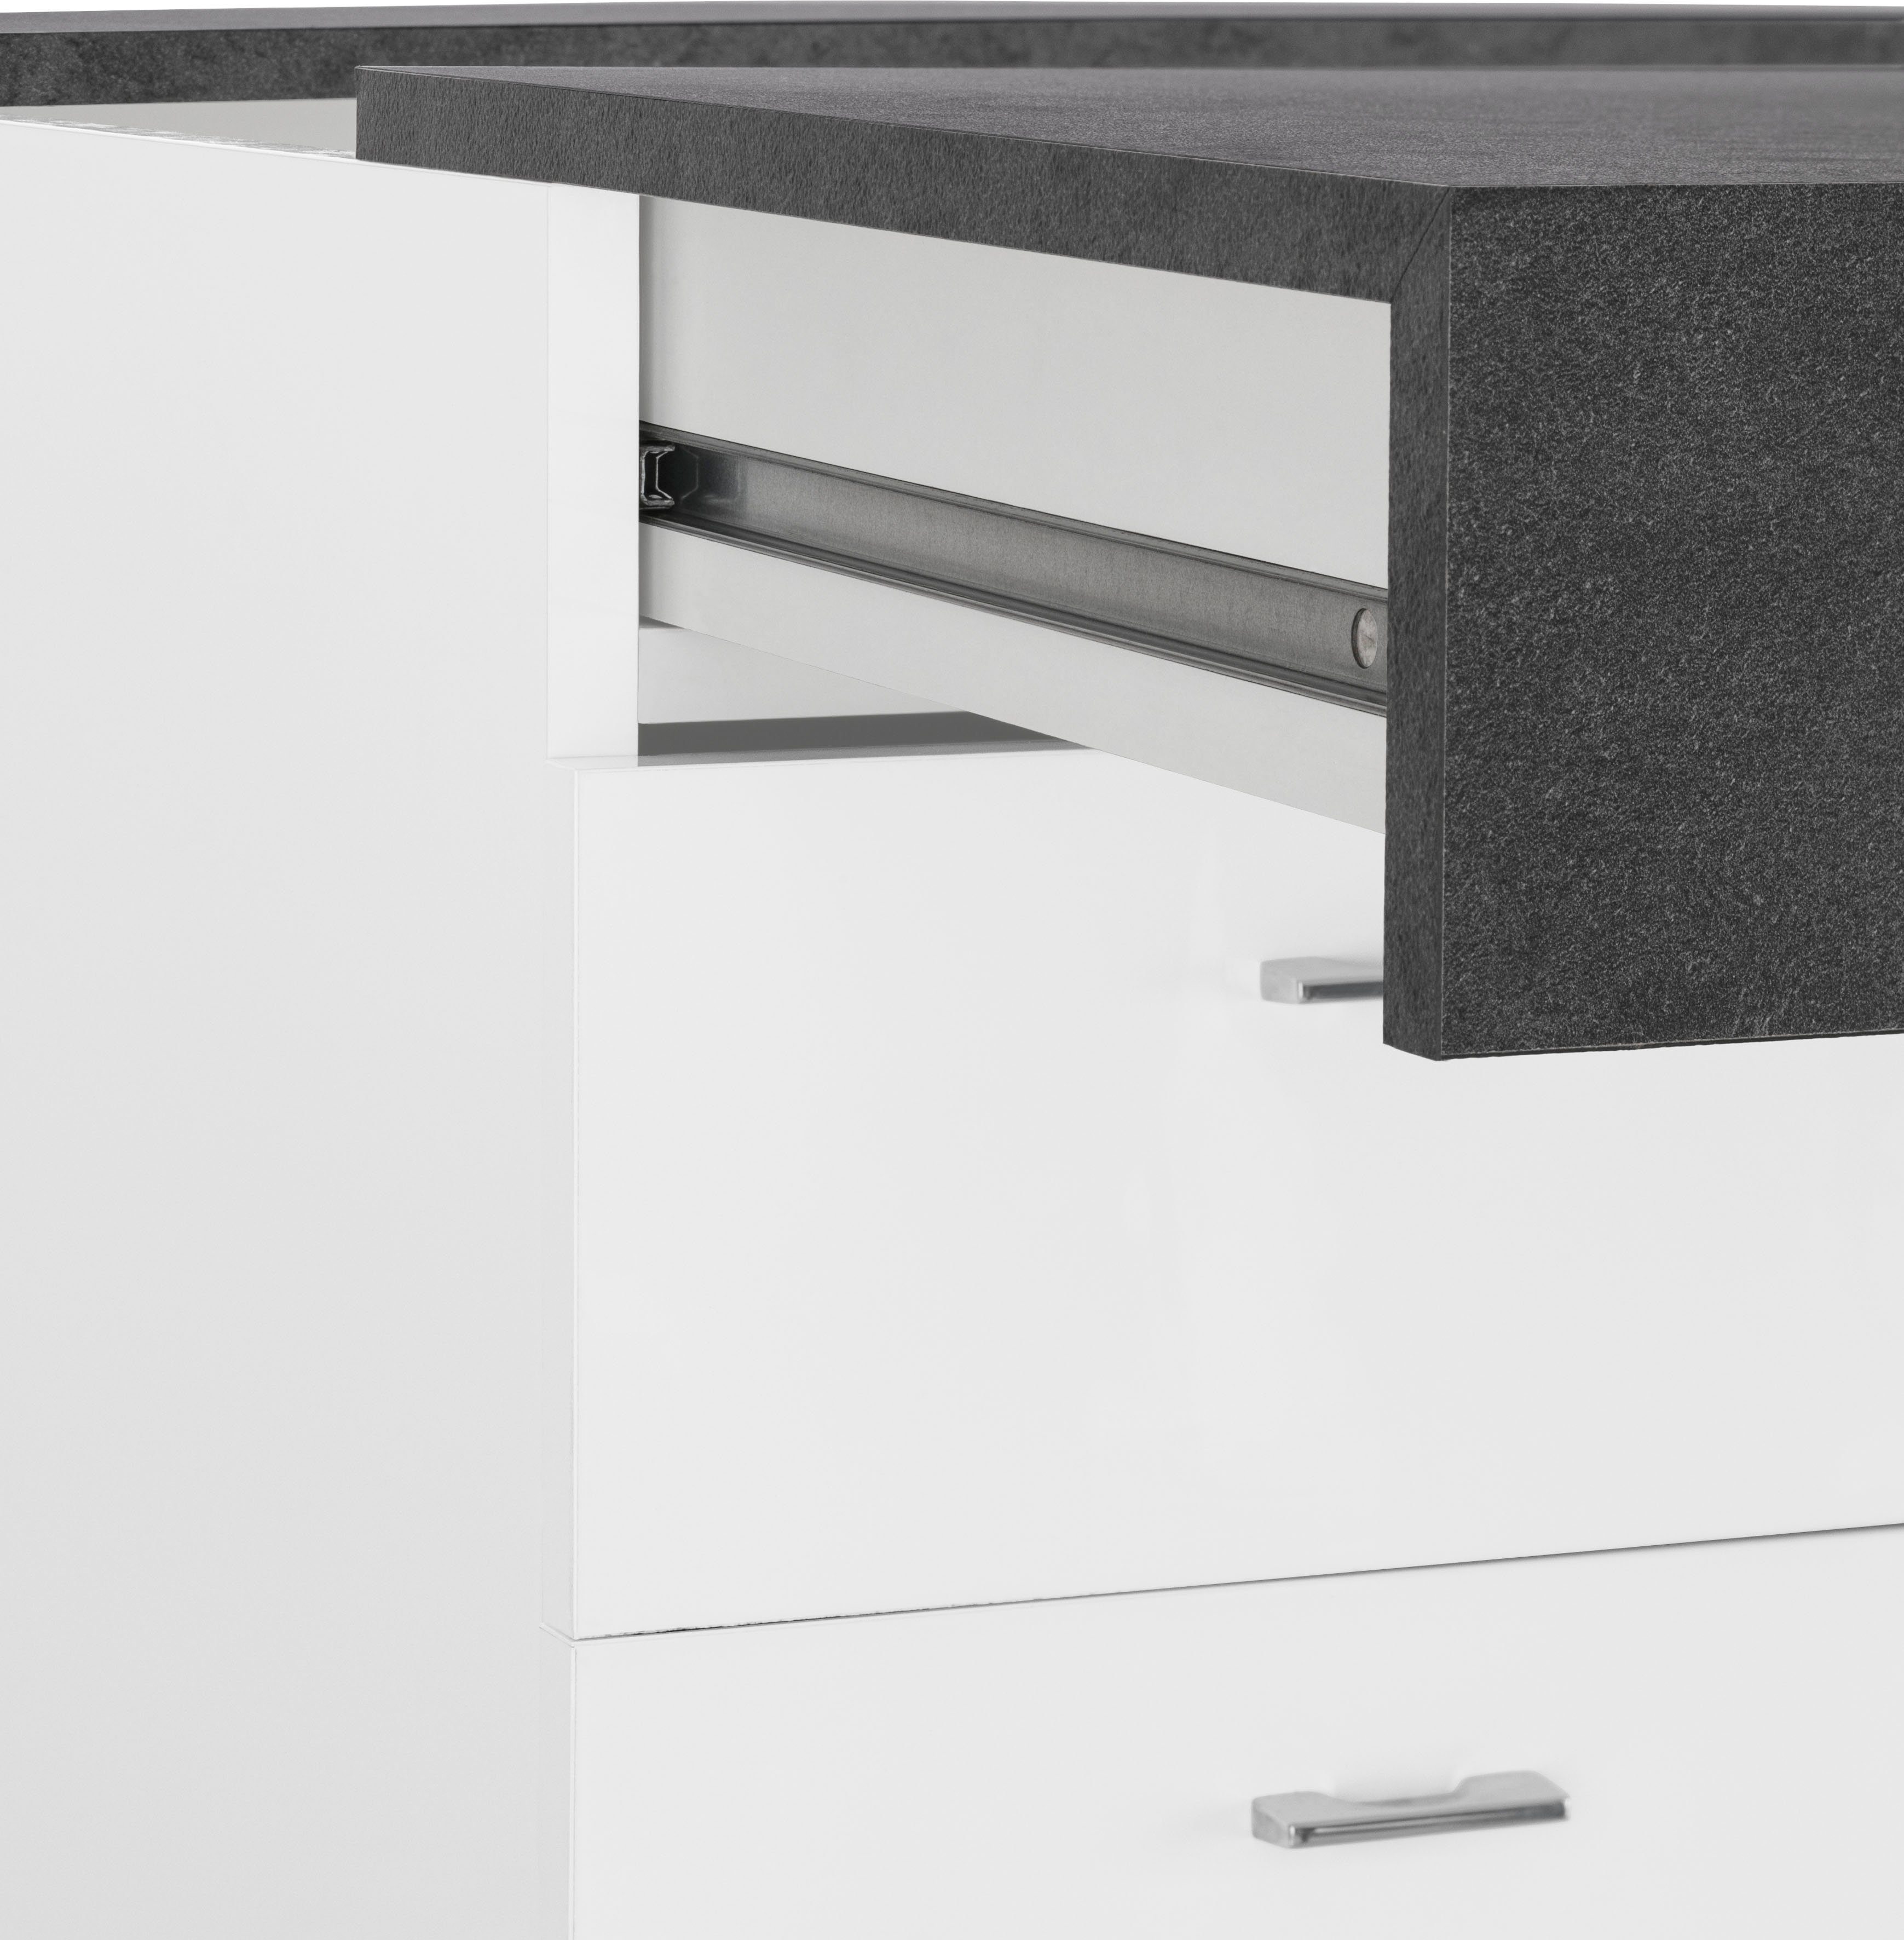 Sliding, Tecnos ausziehbar schiefer weiß /schiefer | Tischplatte Schreibtisch Hochglanz